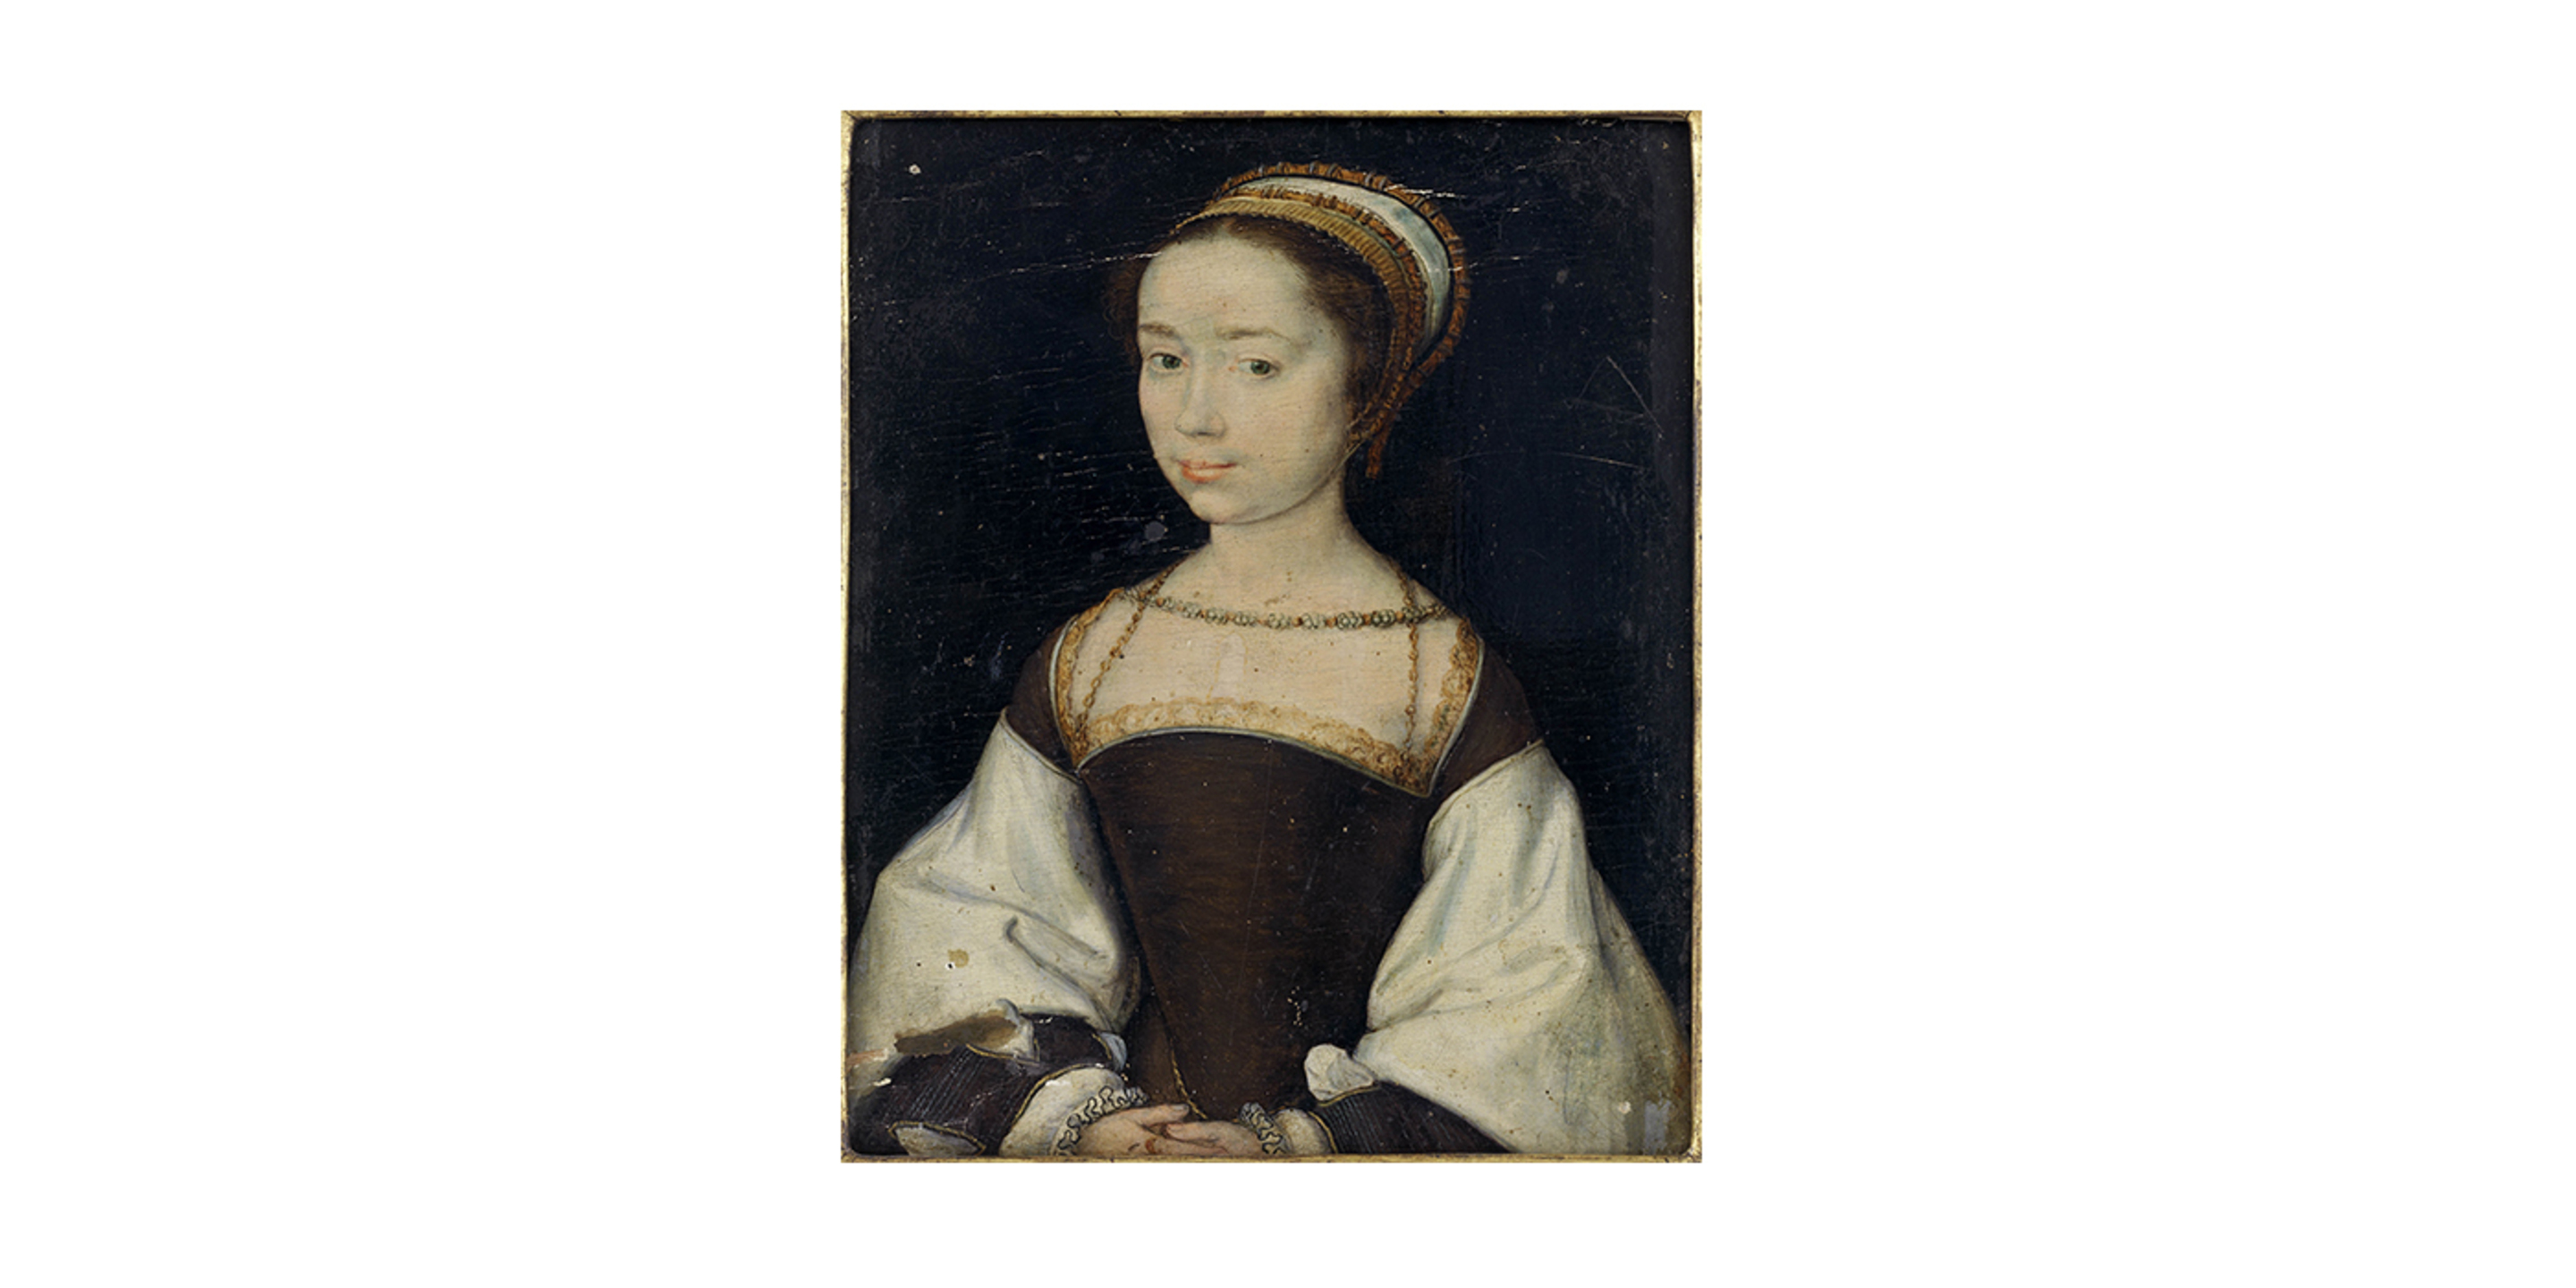 Corneille de Lyon, Portrait d’une jeune inconnue, Lyon, entre 1520 et 1540. © © musée des Tissus – Pierre Verrier